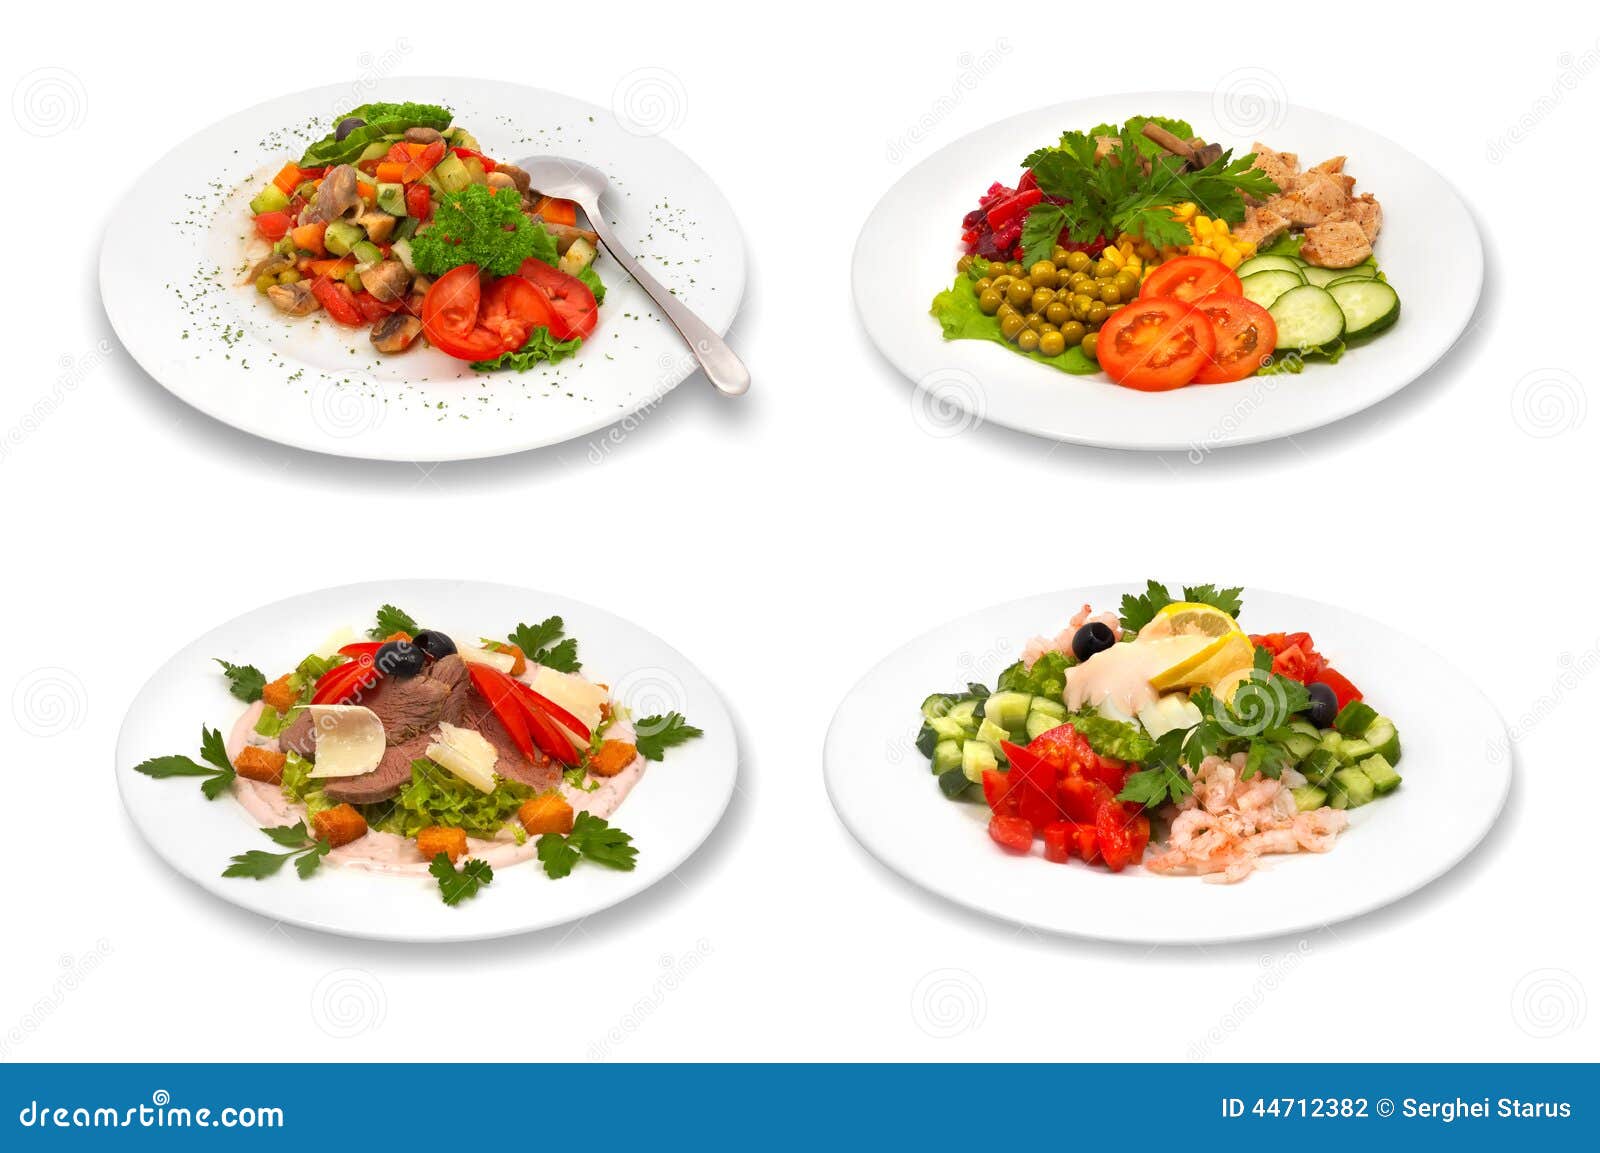 Grupo de saladas no fundo branco. Alimento saudável, grupo de saladas diferentes em placas, isolado no branco